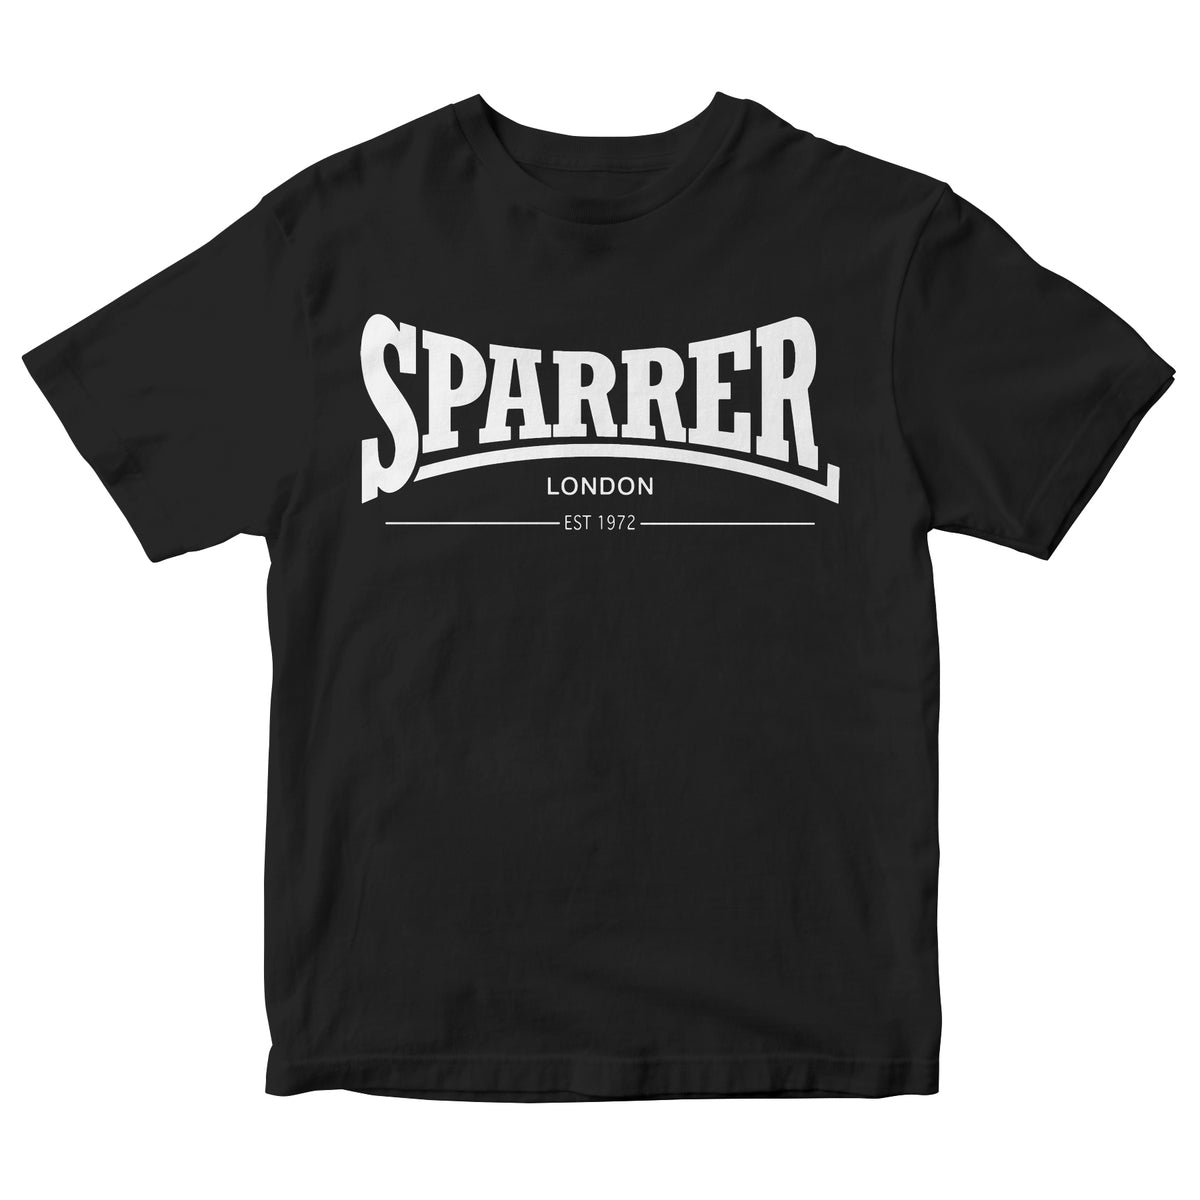 Cock Sparrer - Sparrer London - Black - T-Shirt